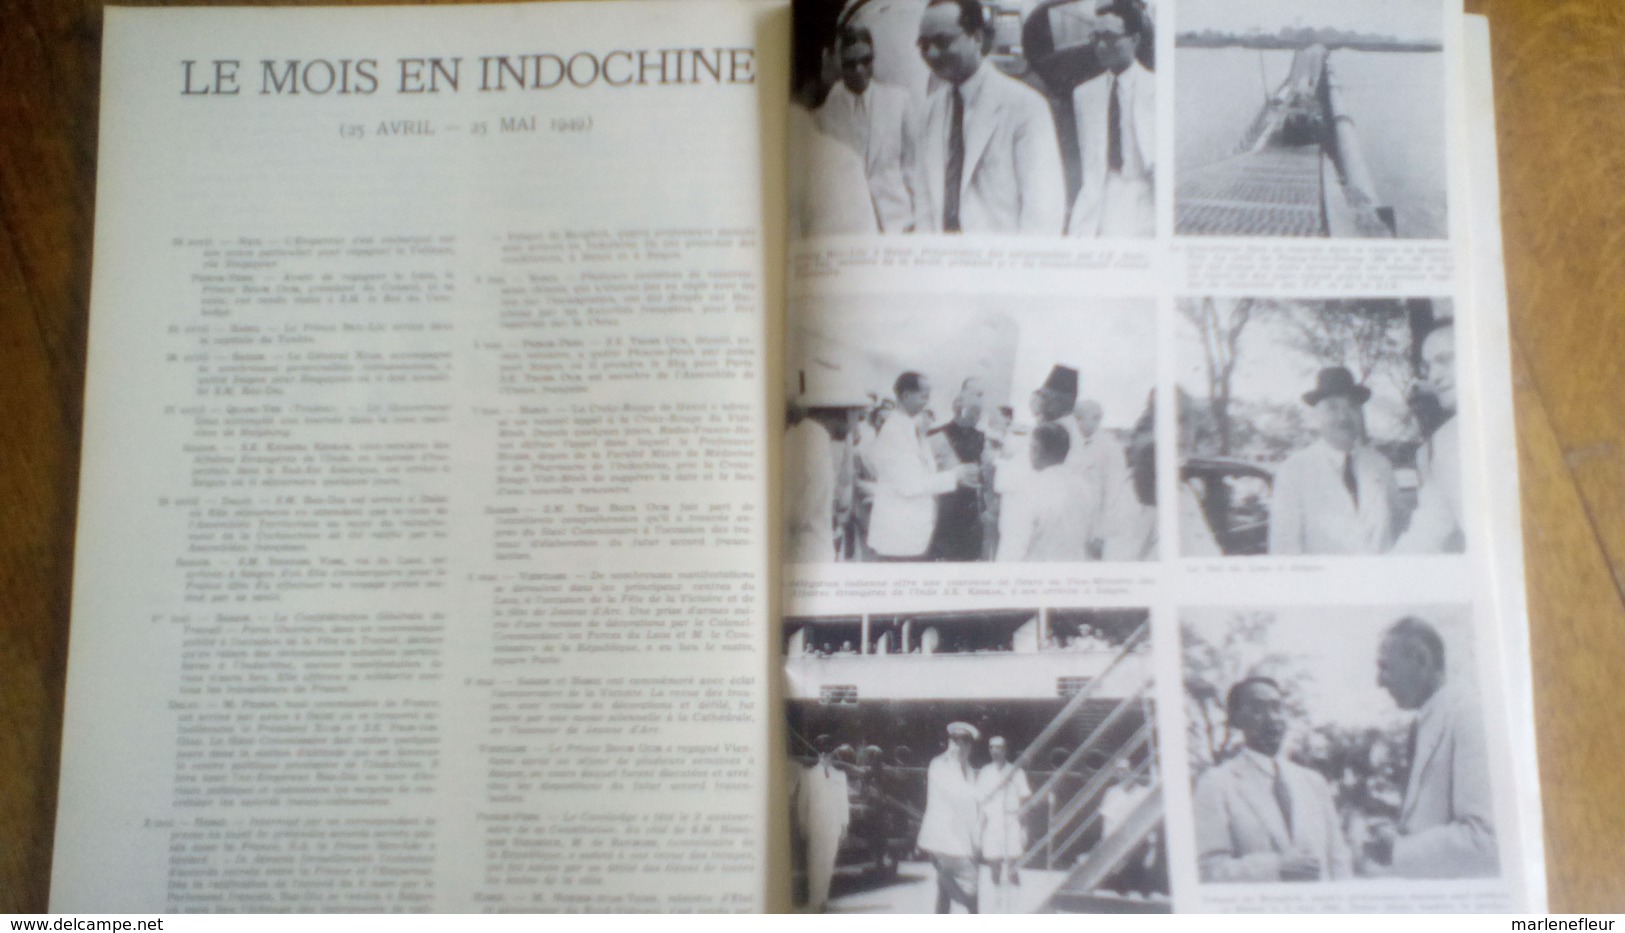 SUD-EST, Saïgon,n°1, 1949, Trang-Trinh, Gabriel Faure, Aviation Commerciale En Indochine, Capitaine Baudelaire - 1950 à Nos Jours